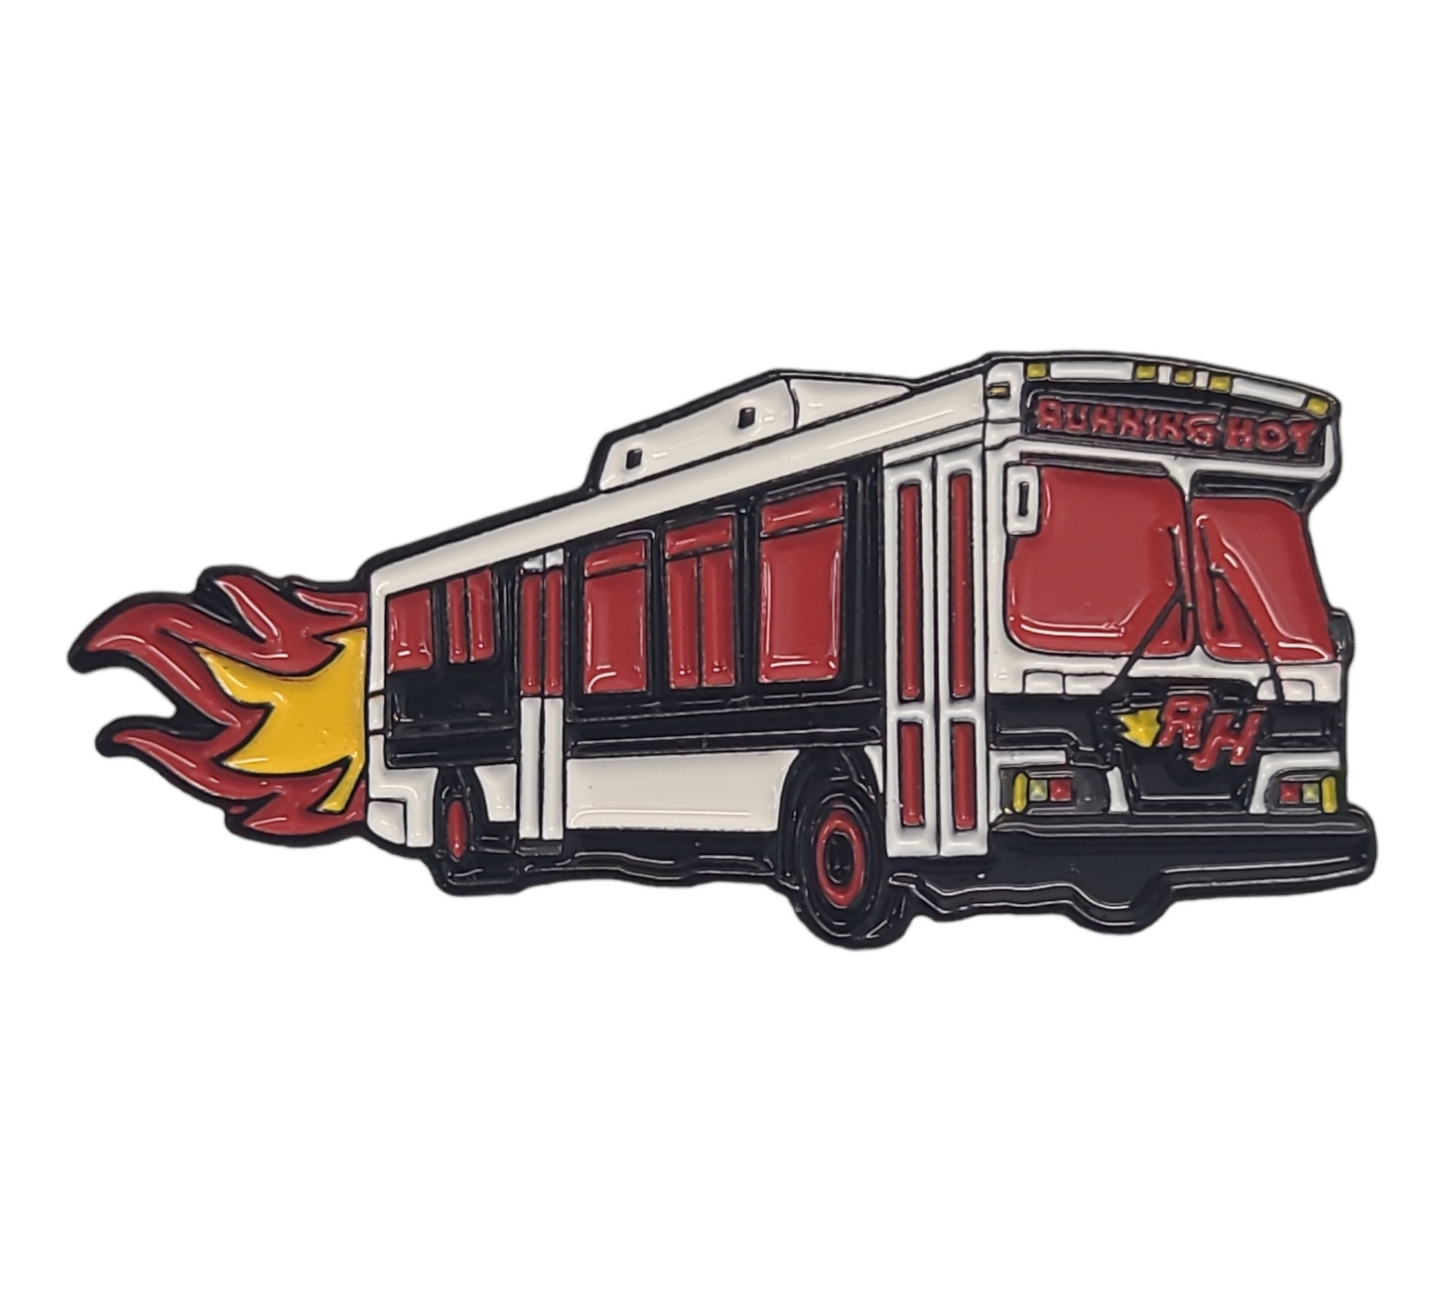 The Running Hot OG Red Bus Pin